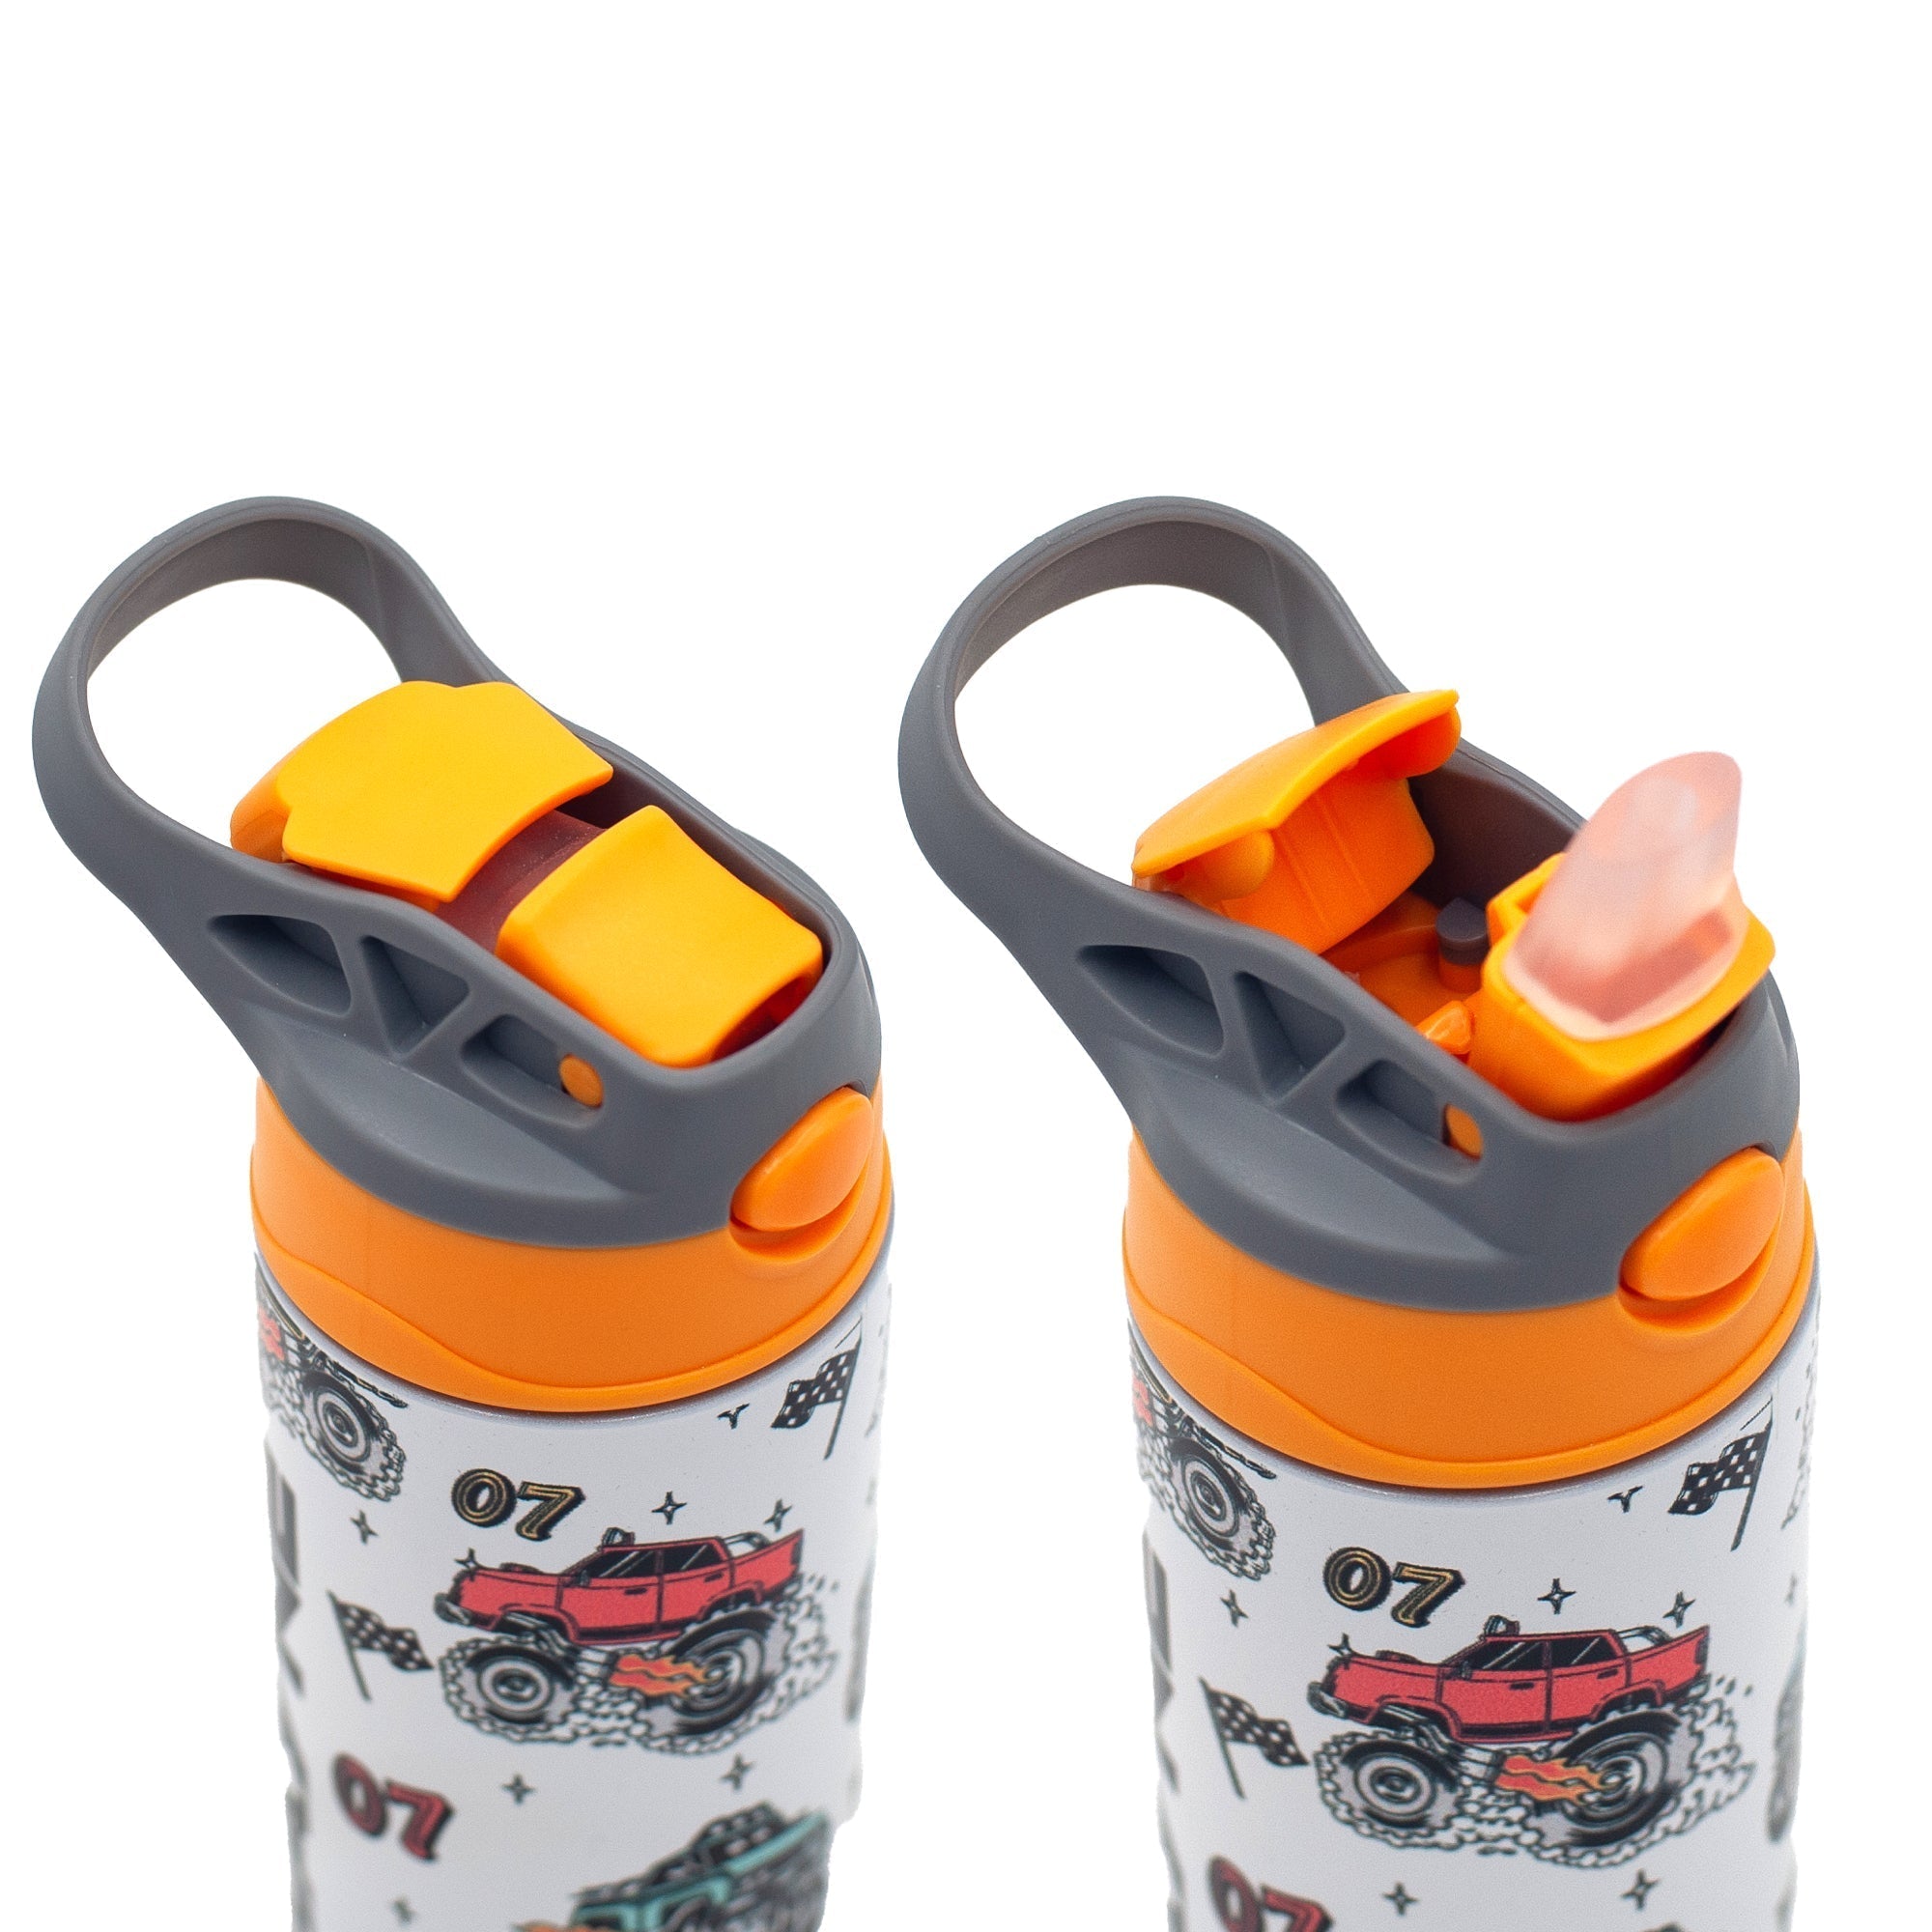 Kids Personalized 12 oz Water Bottle - Orange/Grey Lid